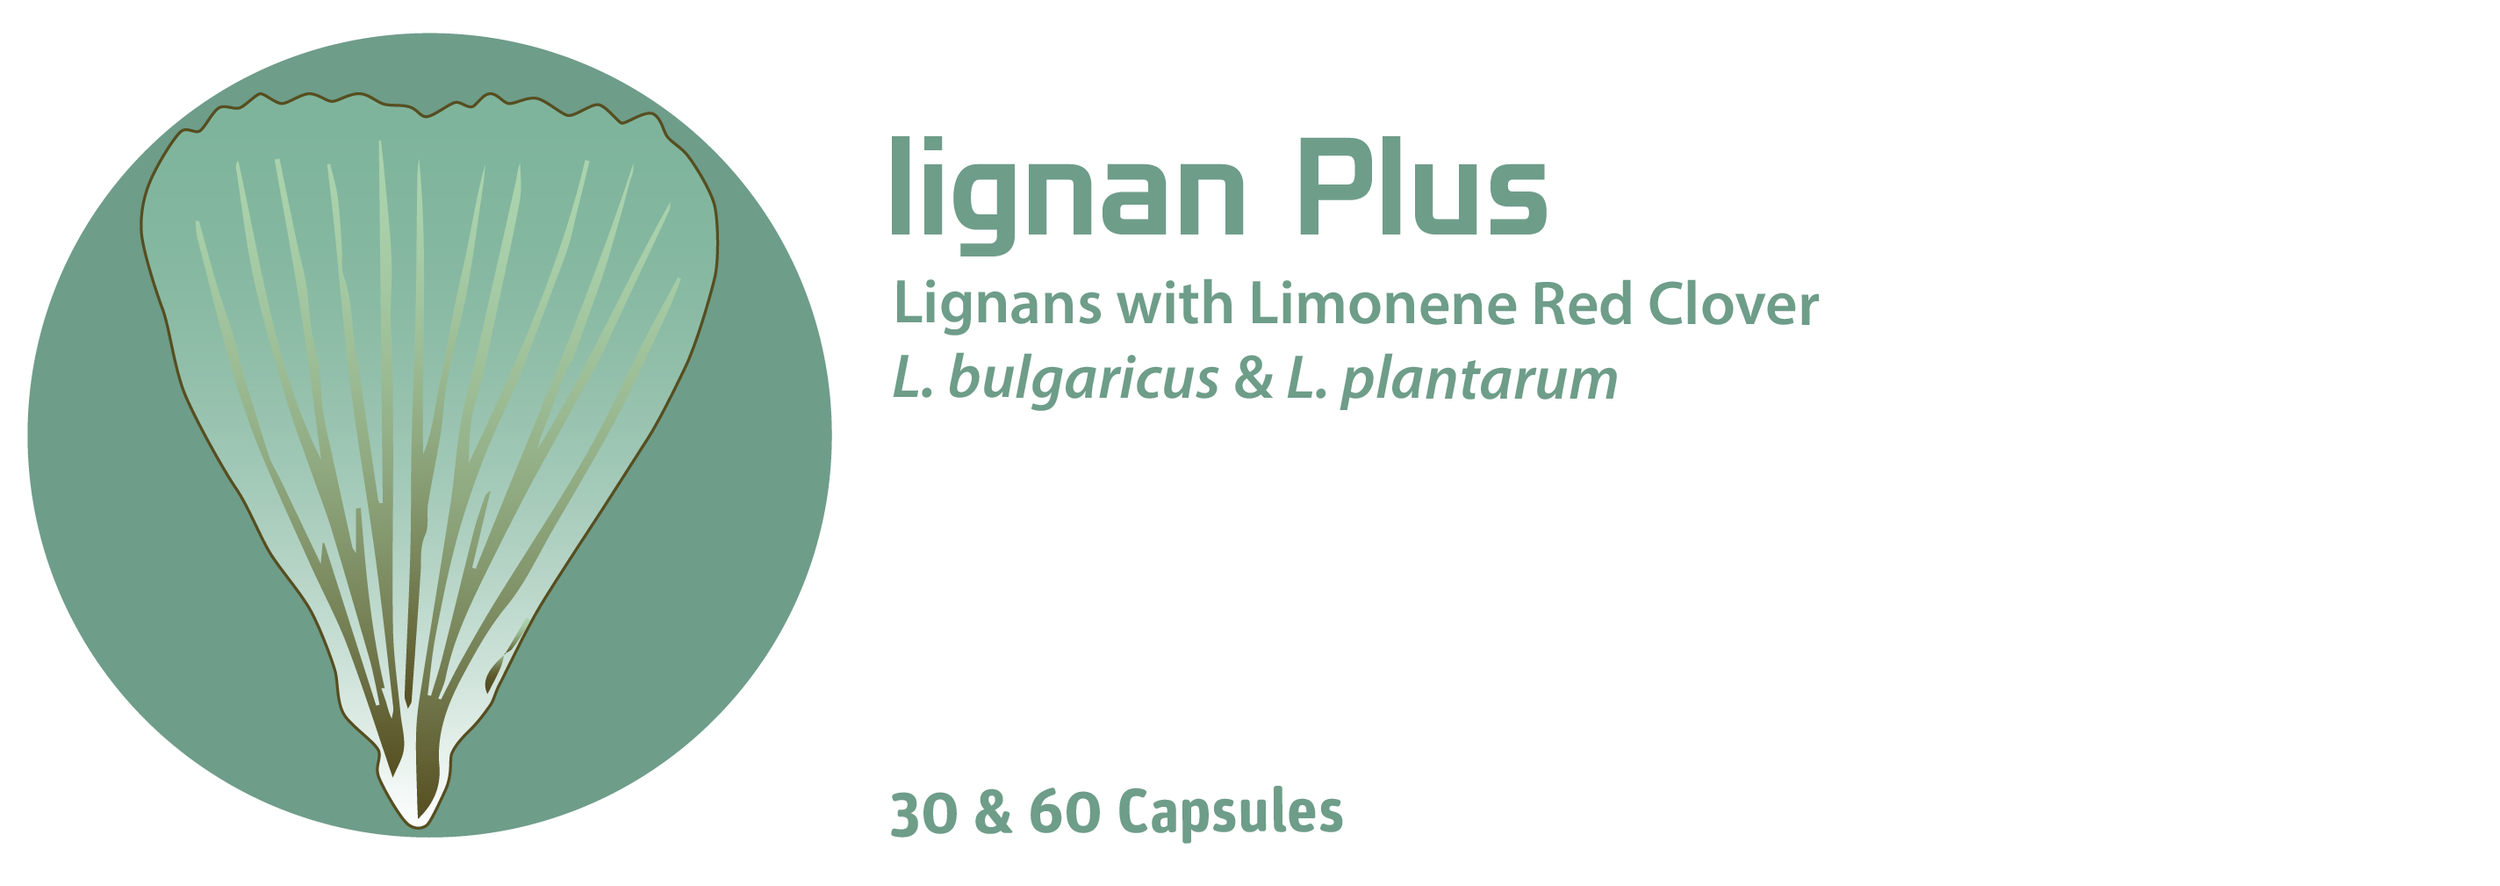 Lignan Plus 23 v2-01.png